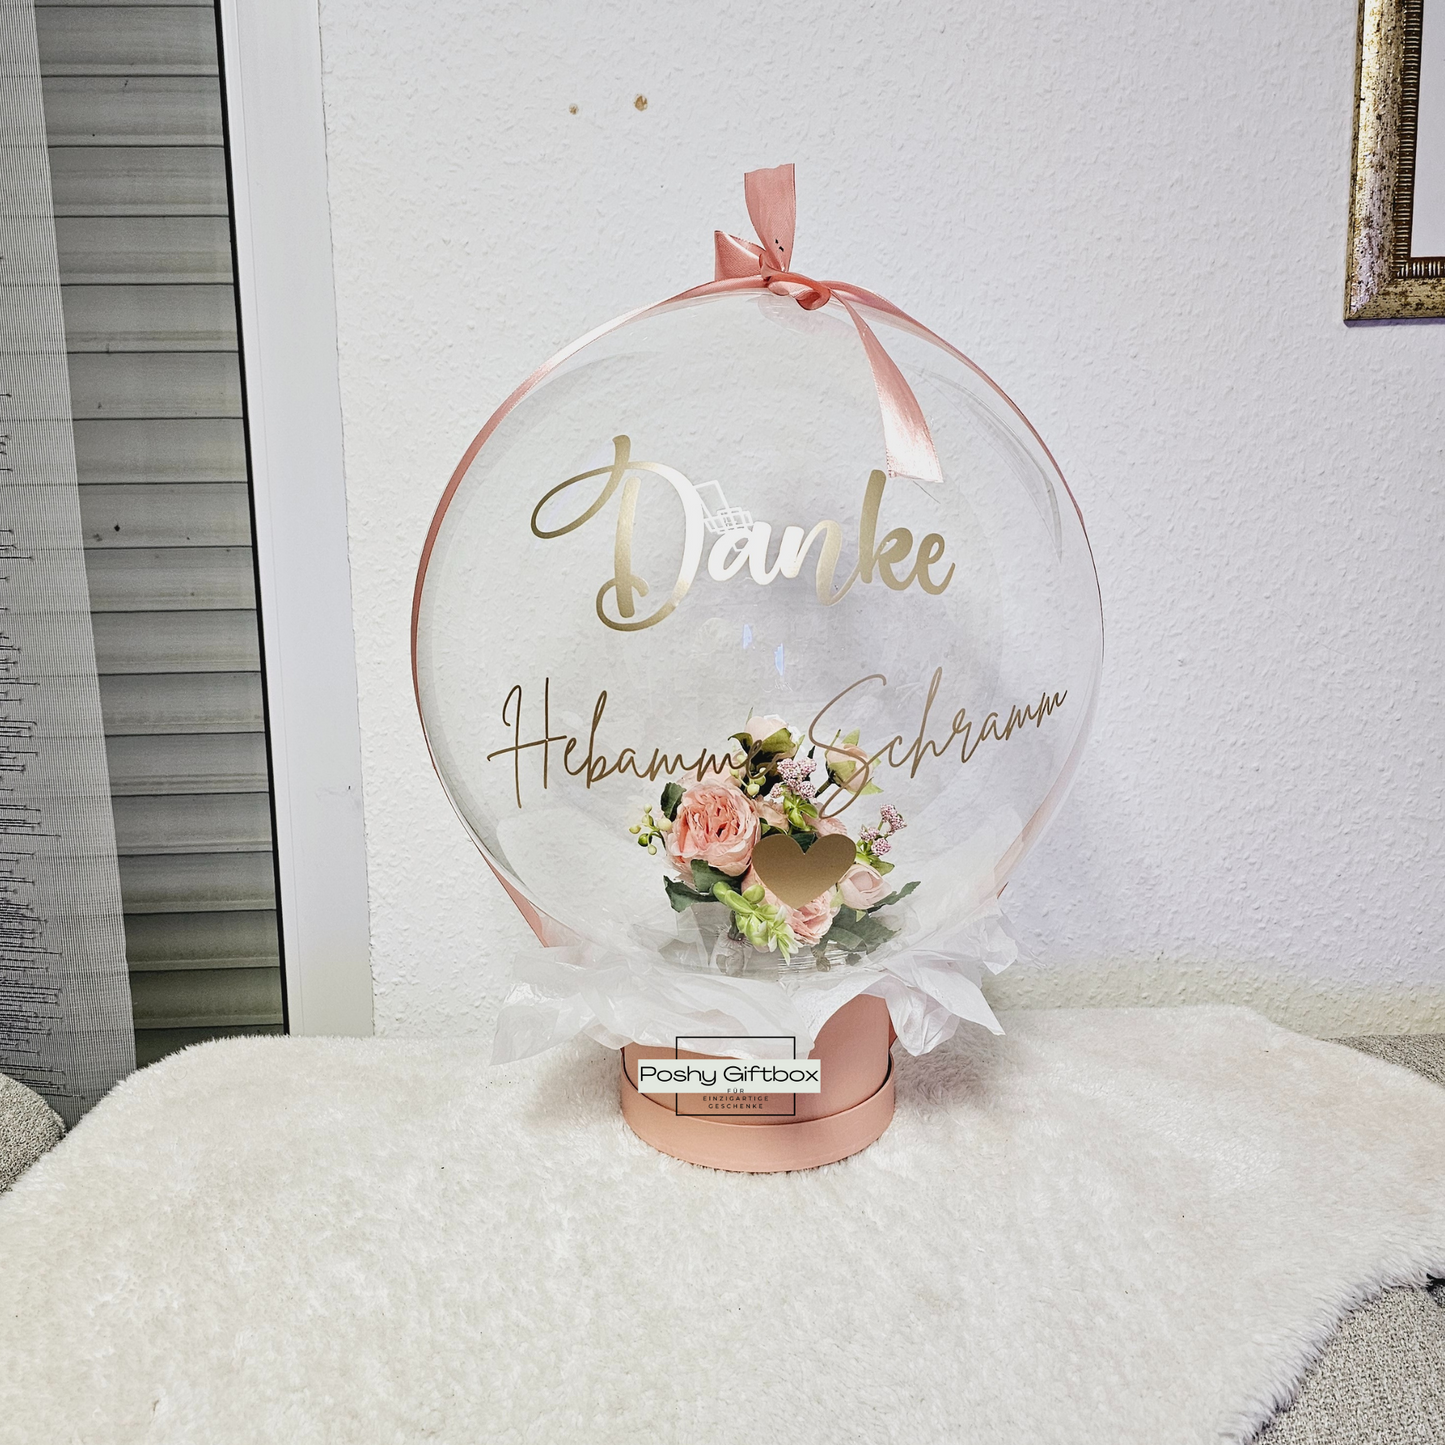 Ballon mit Blumen/Personalisierter Ballon/Ballongrüße/Geburtstagsgeshenk/Muttertagsgeschenk/Geschenke für Frauen/Geschenk Danke Hebamme/Lehrerin/Erzieherin PoshyGiftbox